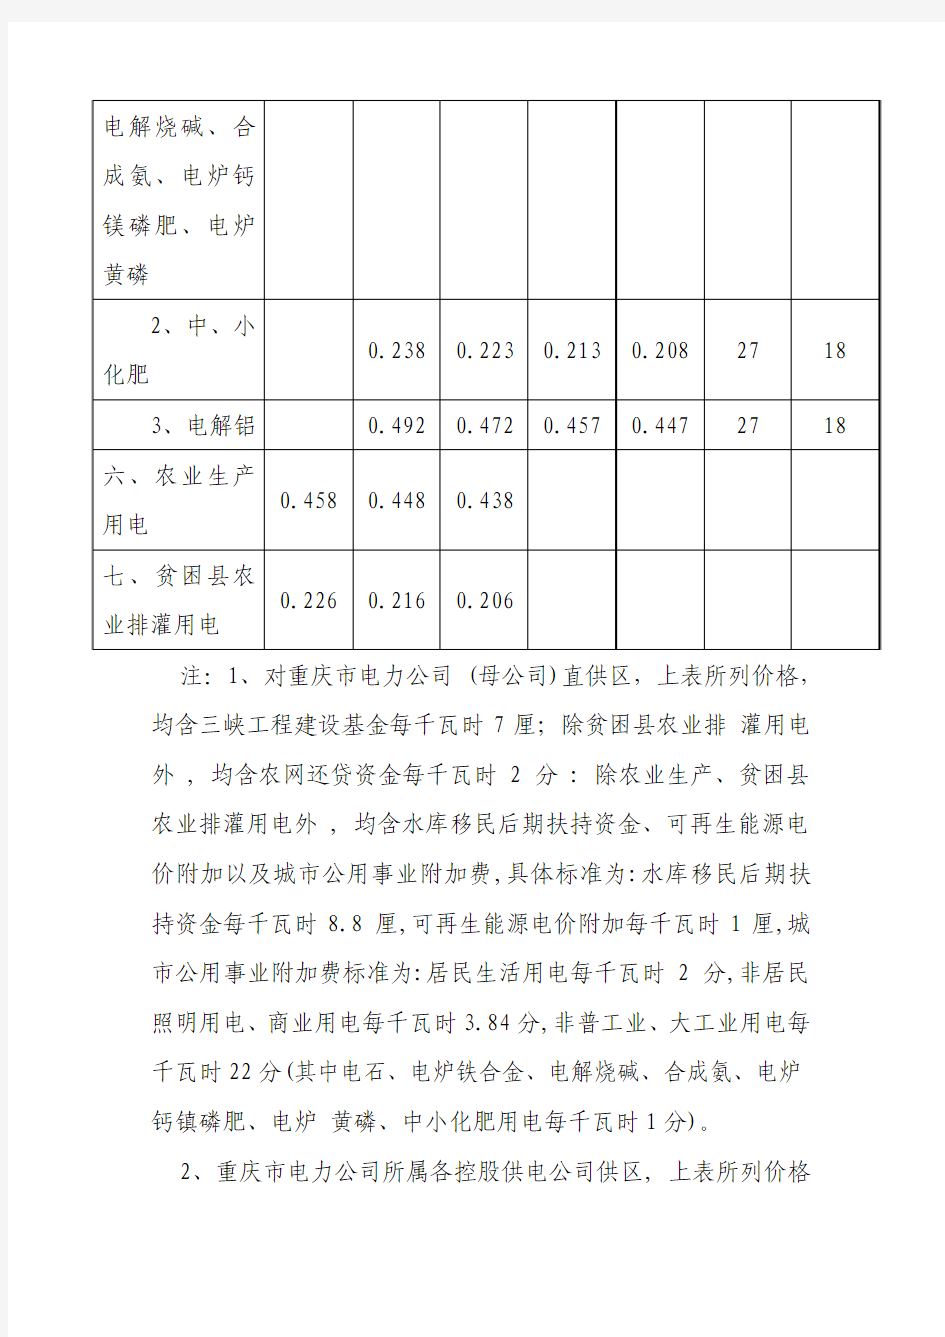 重庆市电网销售电价表